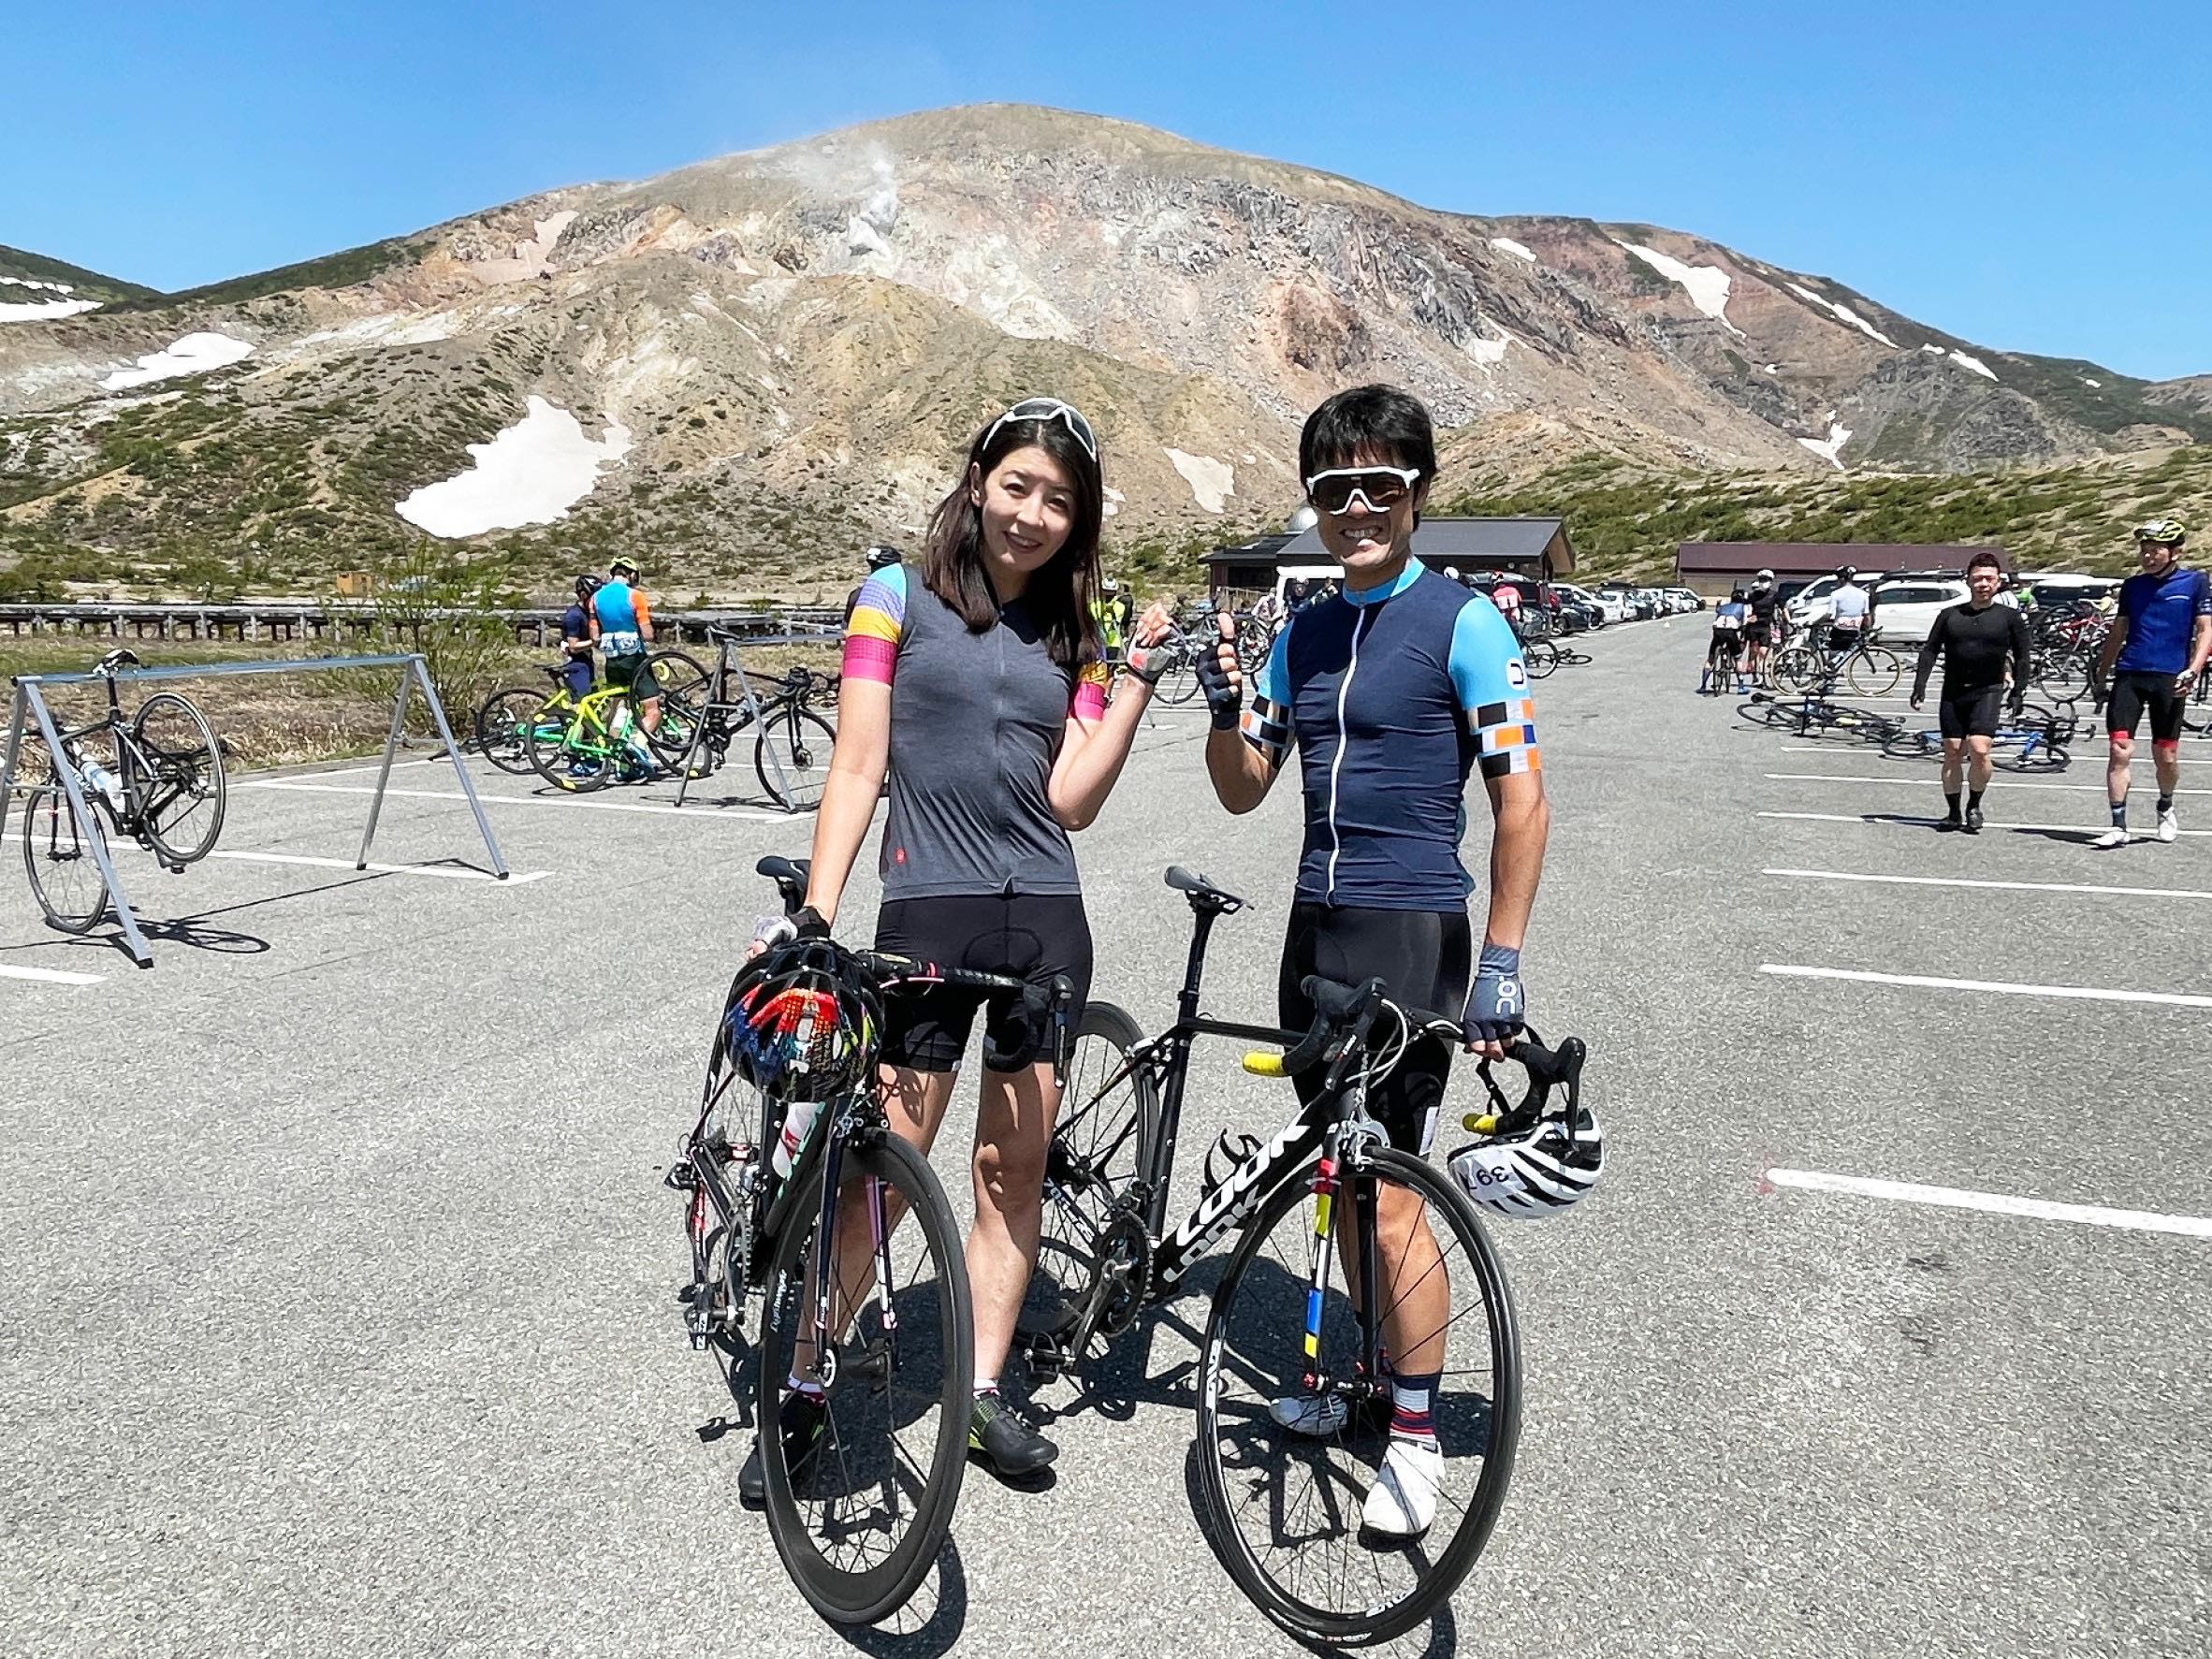 磐梯吾妻スカイラインヒルクライム22 2日目 気軽なサイクリングから本格的なレースまでスポーツバイク を楽しむためのメディア サイクルコンシェルジュ